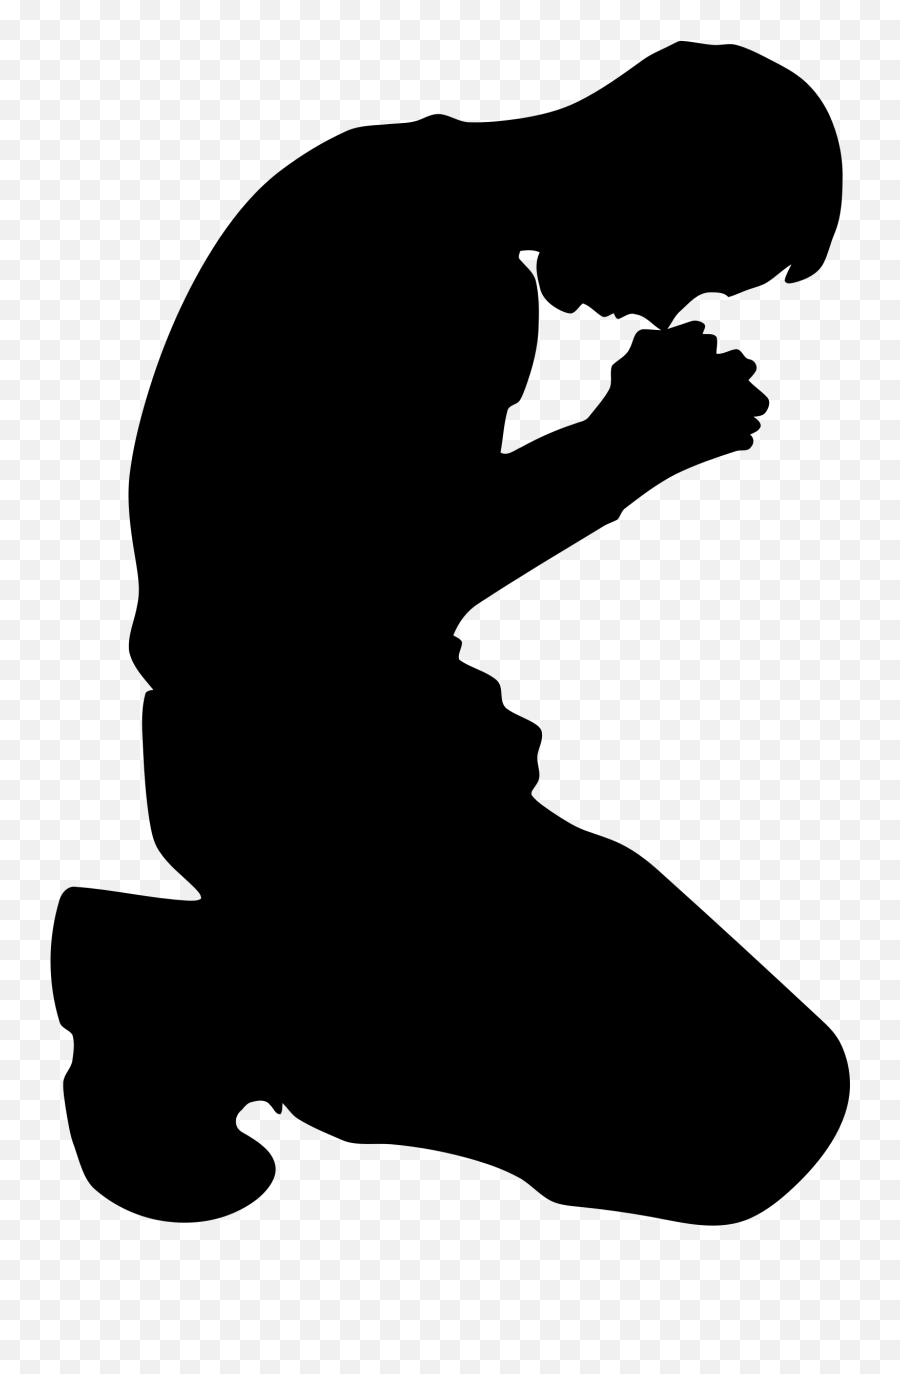 Png Hd Man Kneeling In Prayer Minus - Man Praying Silhouette Emoji,Kneeling Emoji